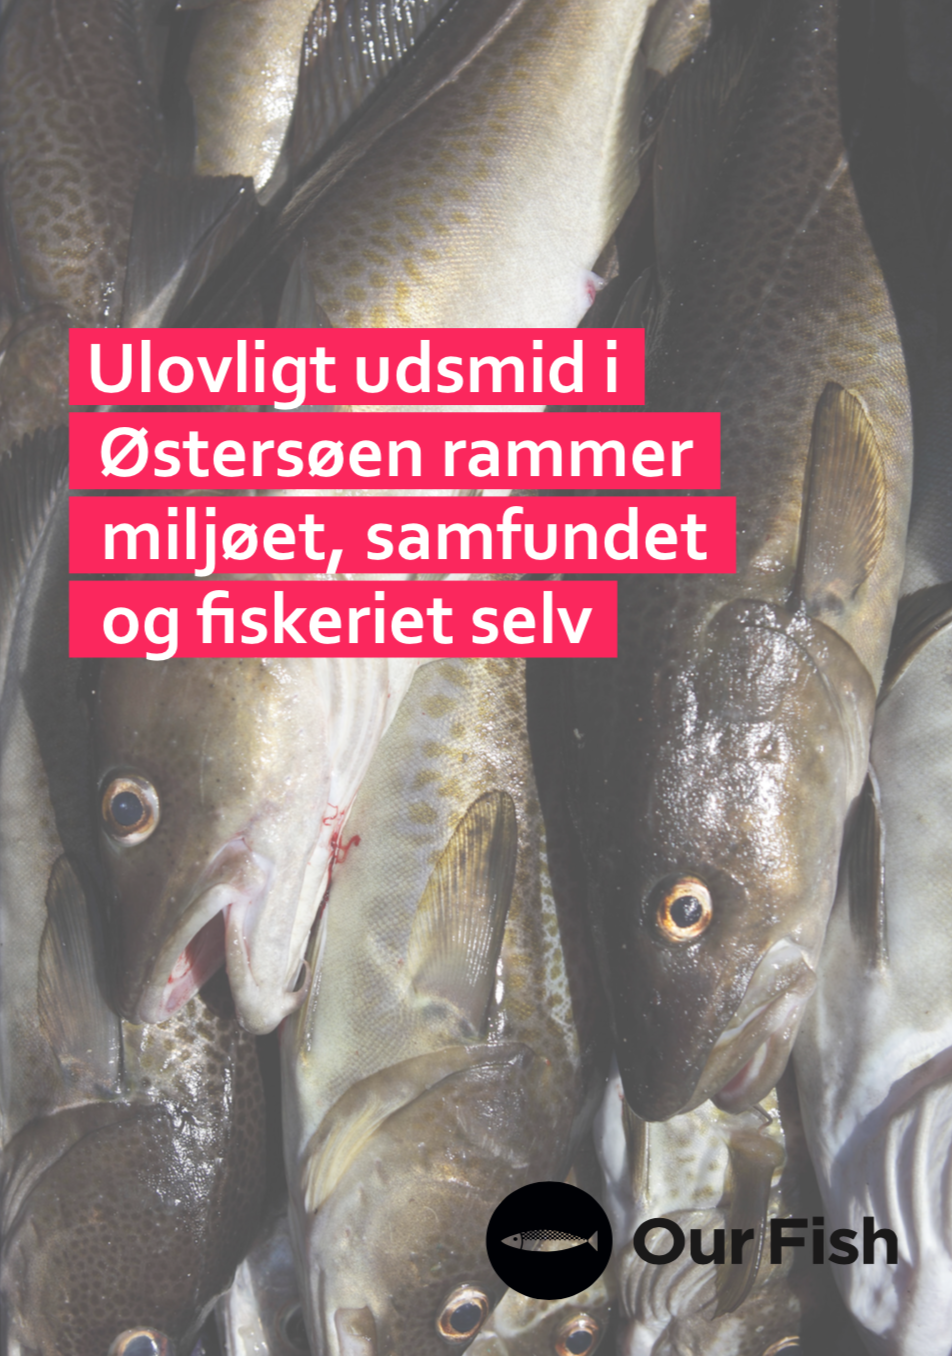 Ulovligt udsmid i Østersøen rammer miljøet, samfundet og fiskeriet selv